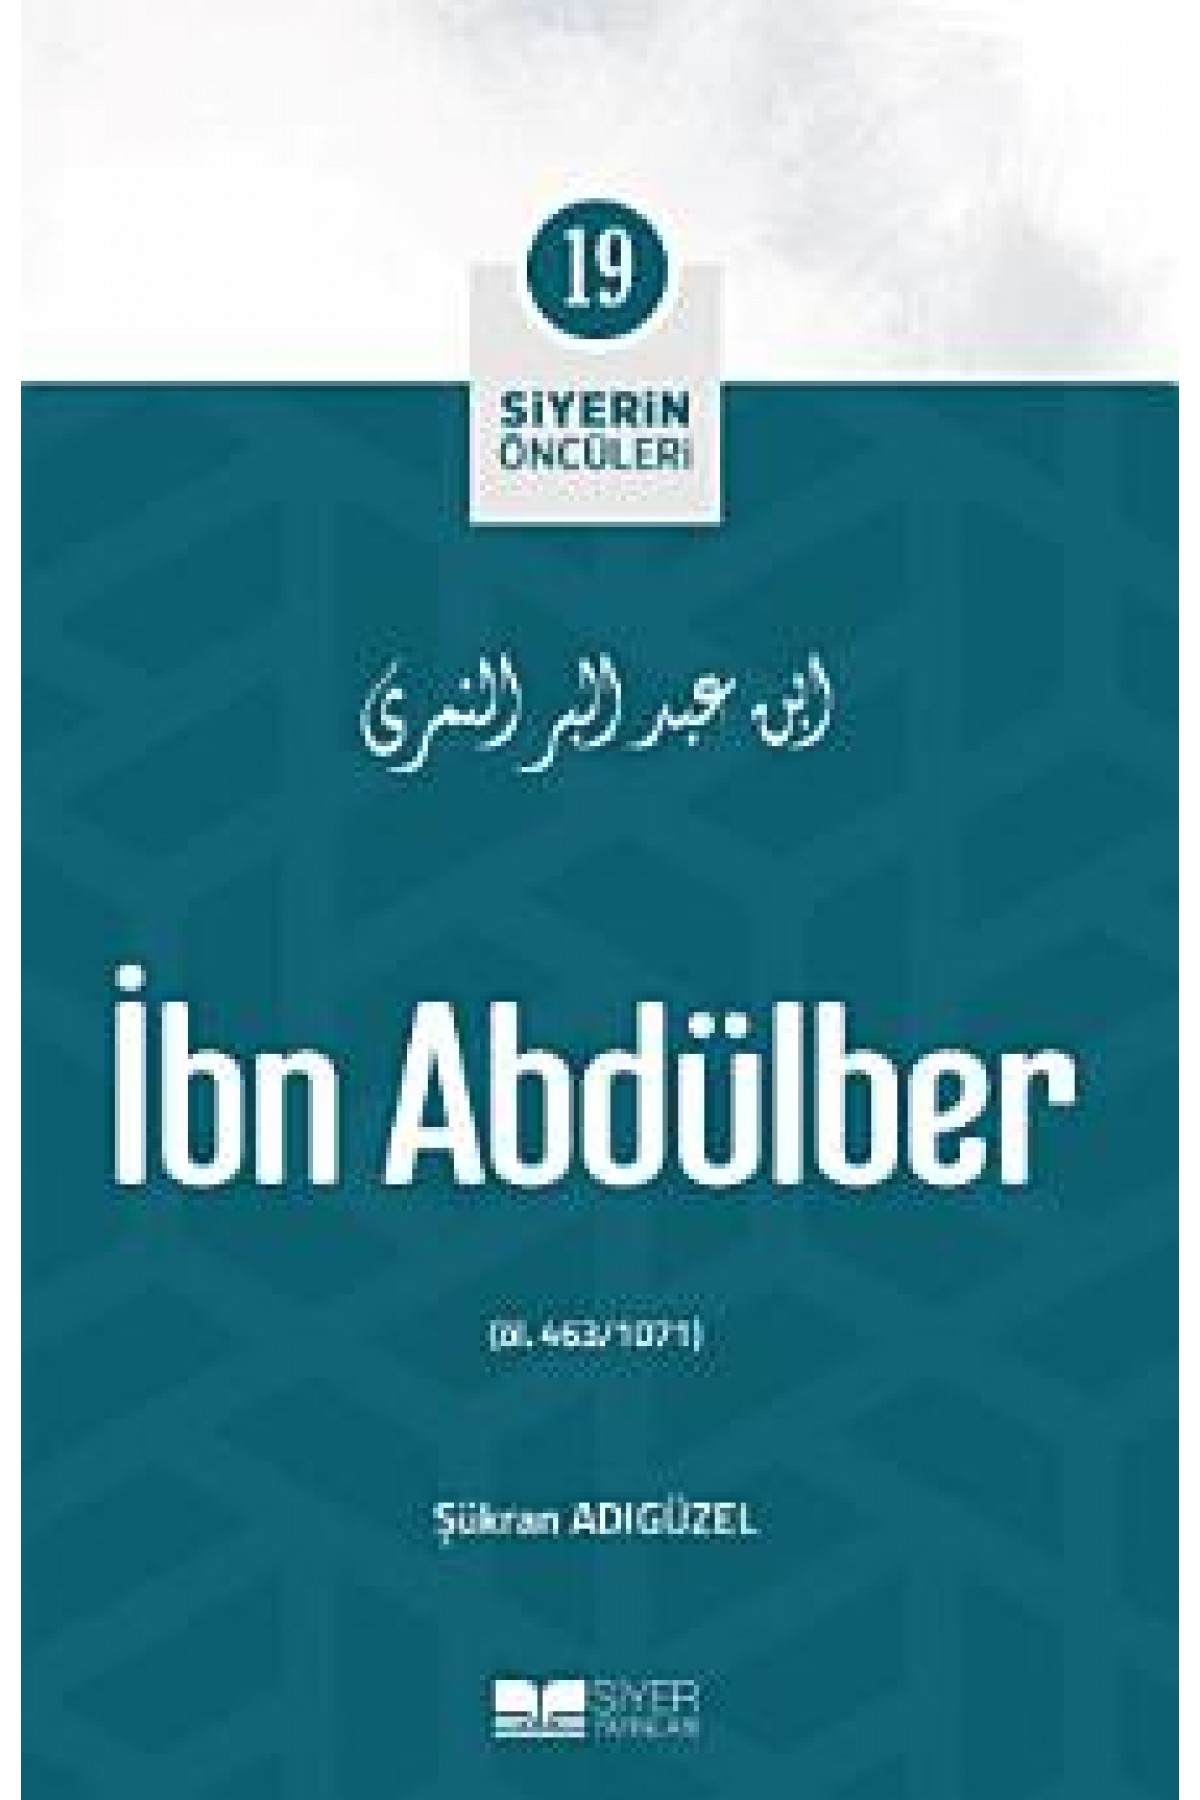 İbn Abdülber; Siyerin Öncüleri 19